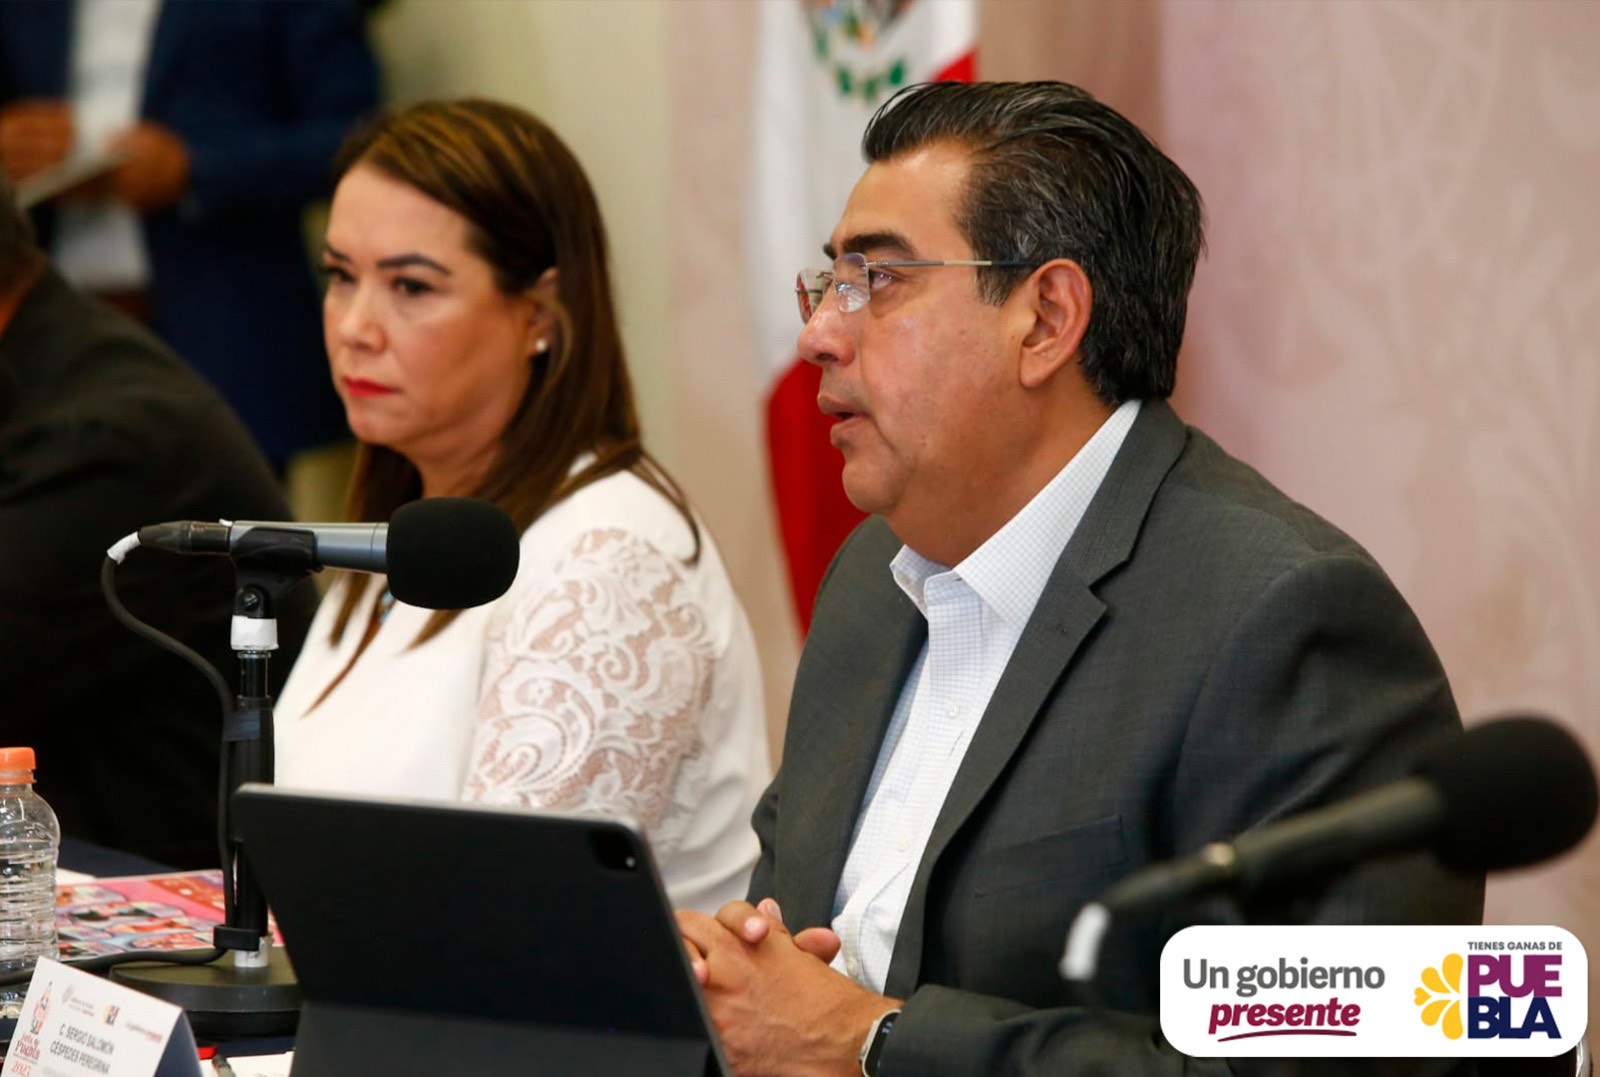 Analizan integrar el sector salud de Puebla al IMSS – Bienestar, confirmó el gobernador